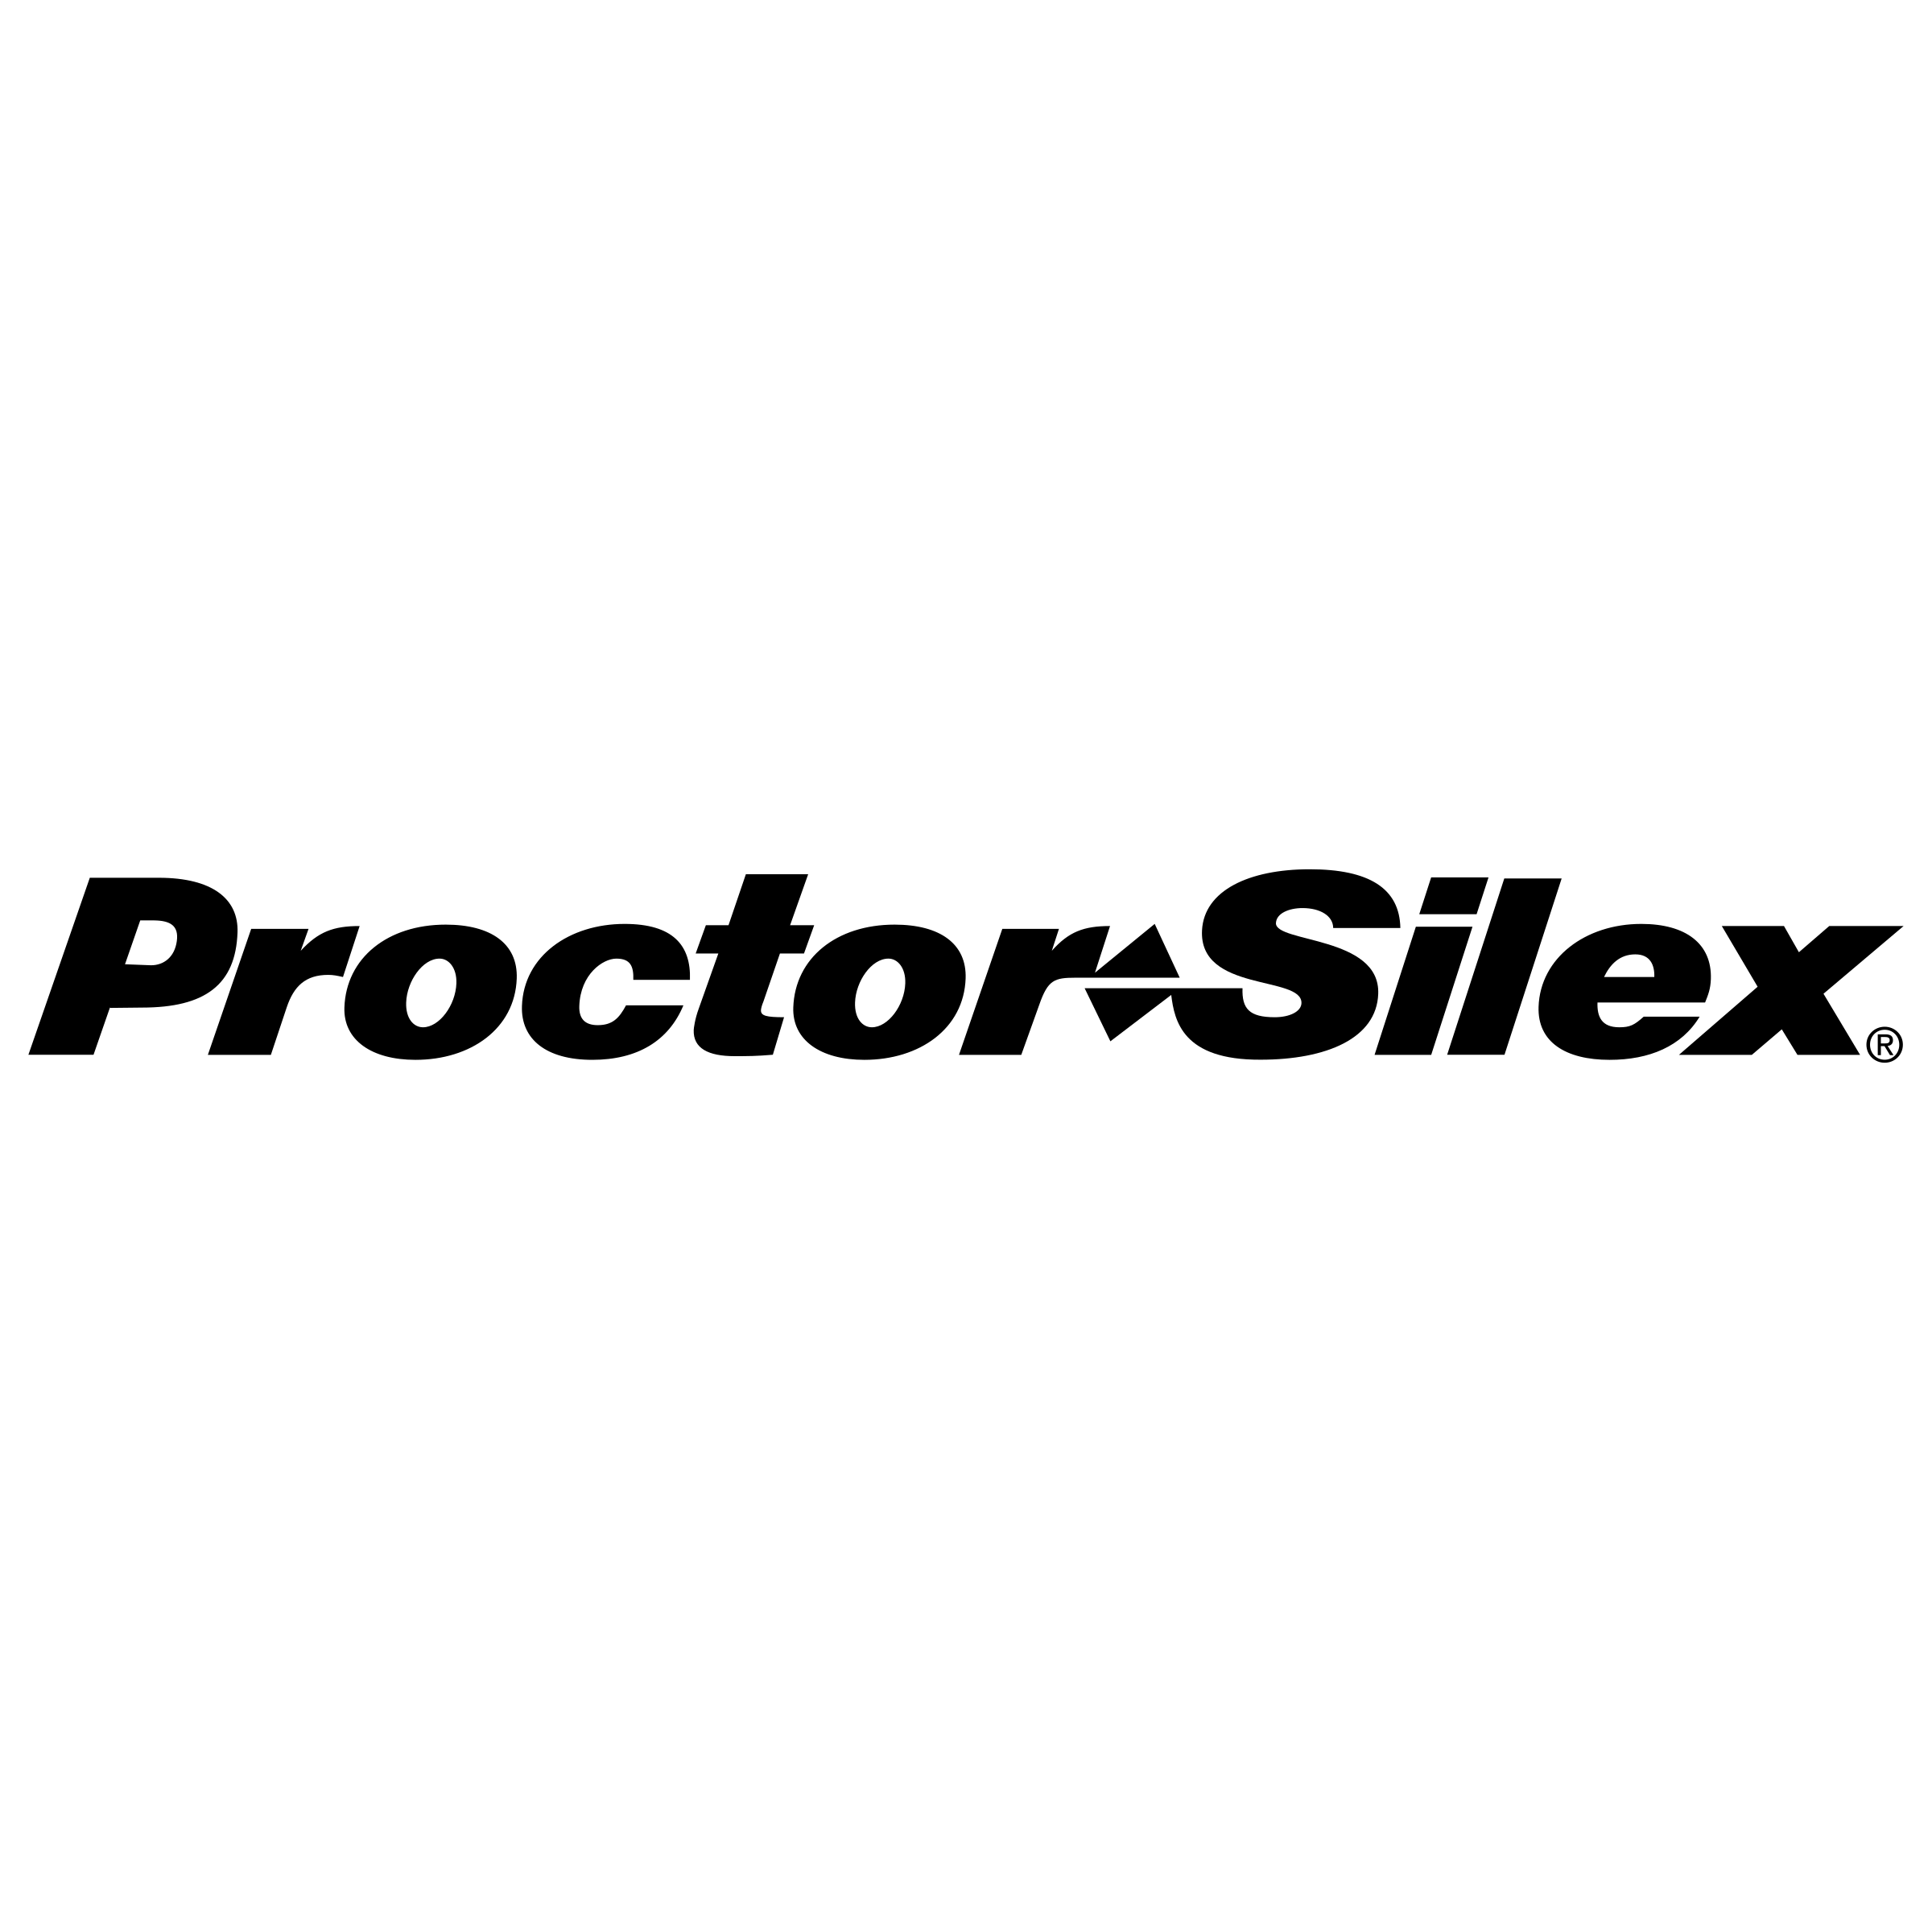 Proctor Logo - Proctor Silex Logo PNG Transparent & SVG Vector